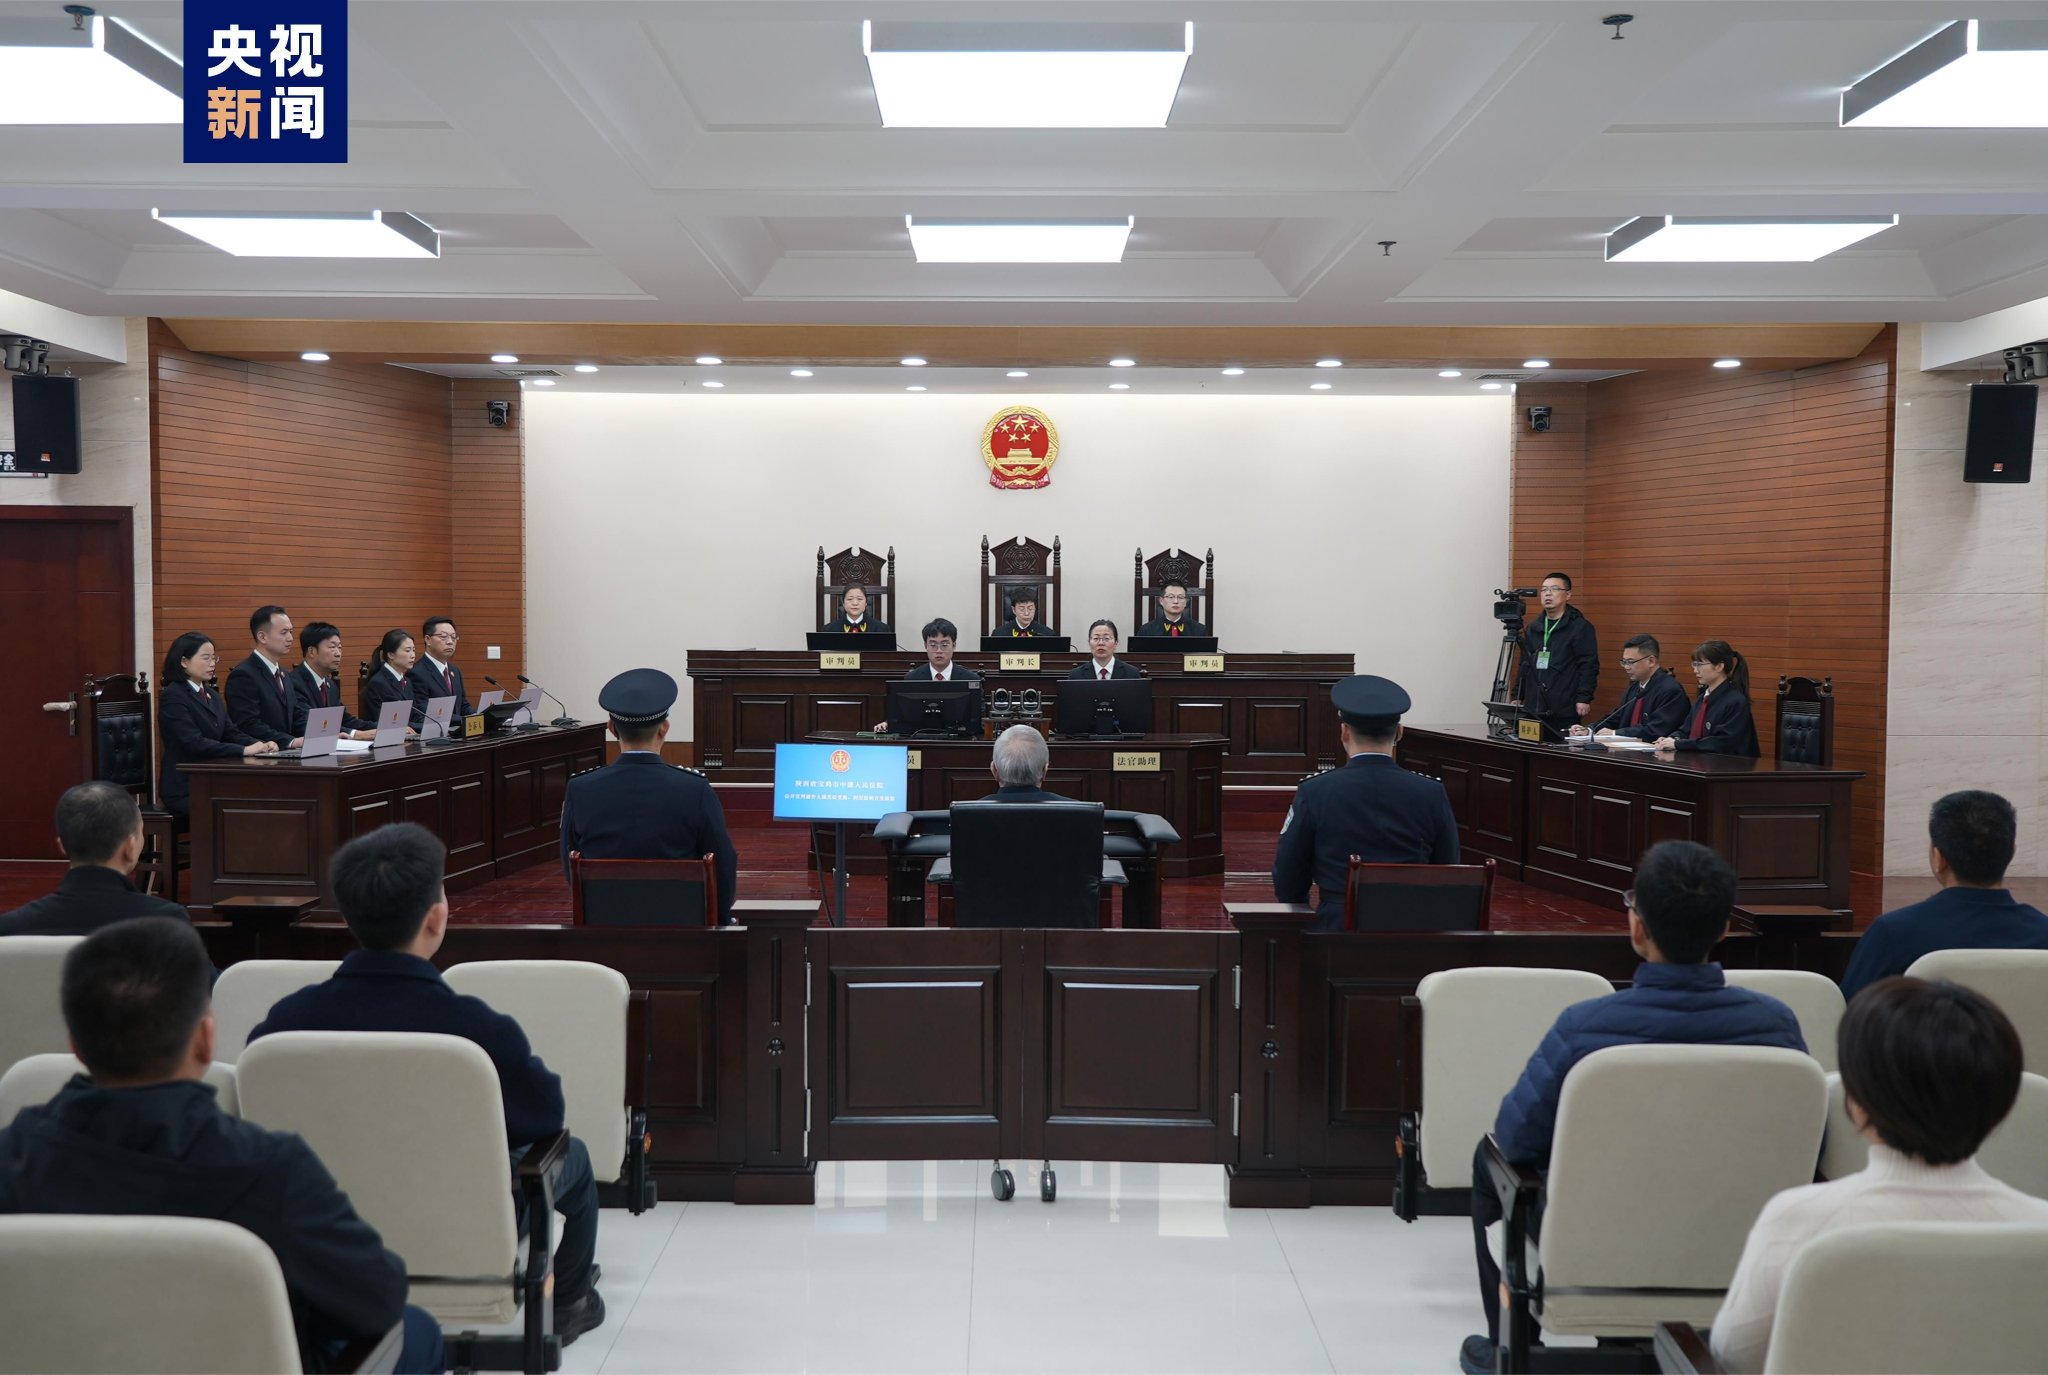 原中国铁路总公司总经理盛光祖受贿案一审被判15年 并处罚金600万